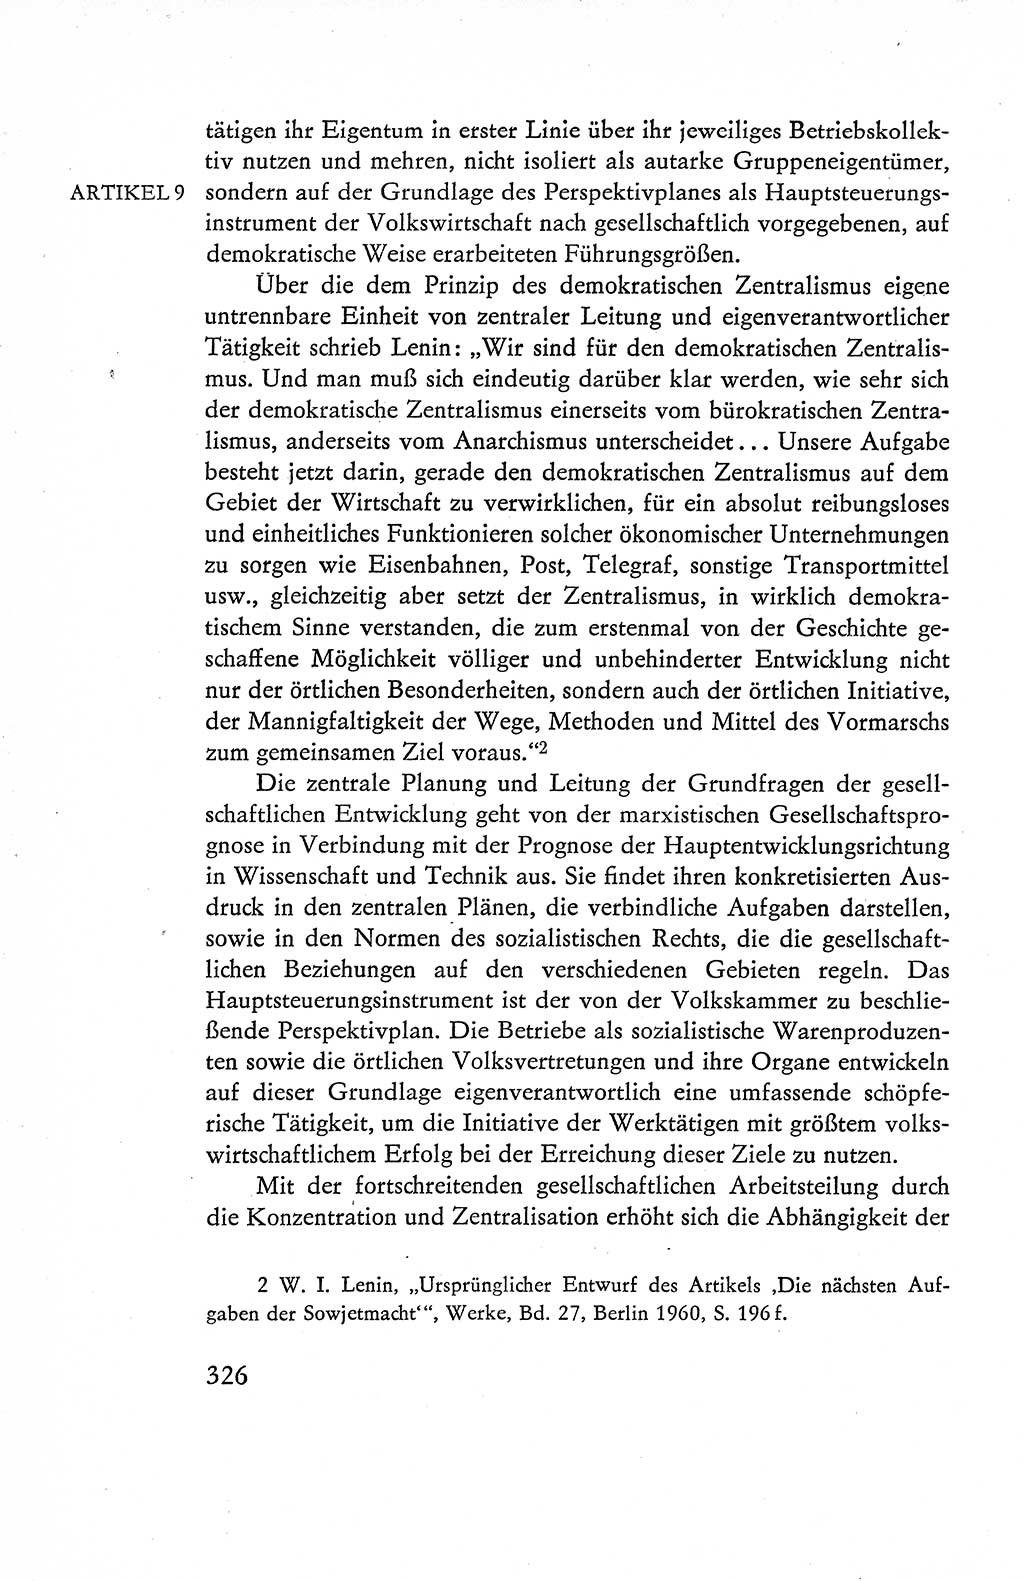 Verfassung der Deutschen Demokratischen Republik (DDR), Dokumente, Kommentar 1969, Band 1, Seite 326 (Verf. DDR Dok. Komm. 1969, Bd. 1, S. 326)